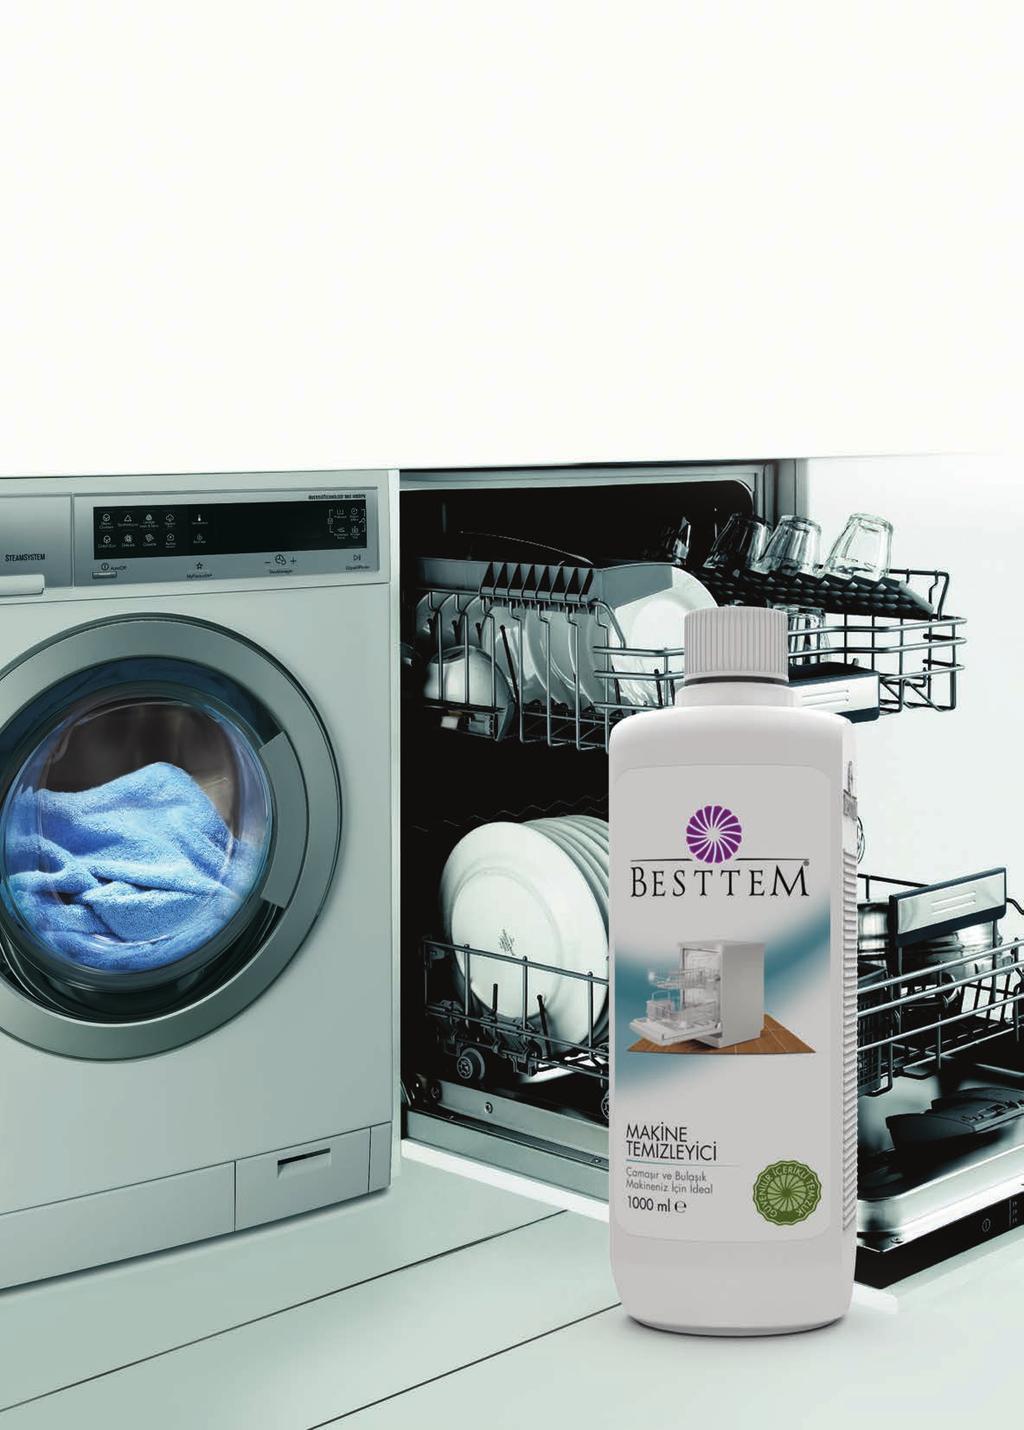 Makine Temizleyici Çamaşır ve Bulaşık Makinelerinizi Tüm Kirlerden Arındırır Bulaşık makinenizin içi zamanla yağlardan, yemek artıklarından ve kirlenmeden dolayı filtrede, su borusunda, giderde ve su